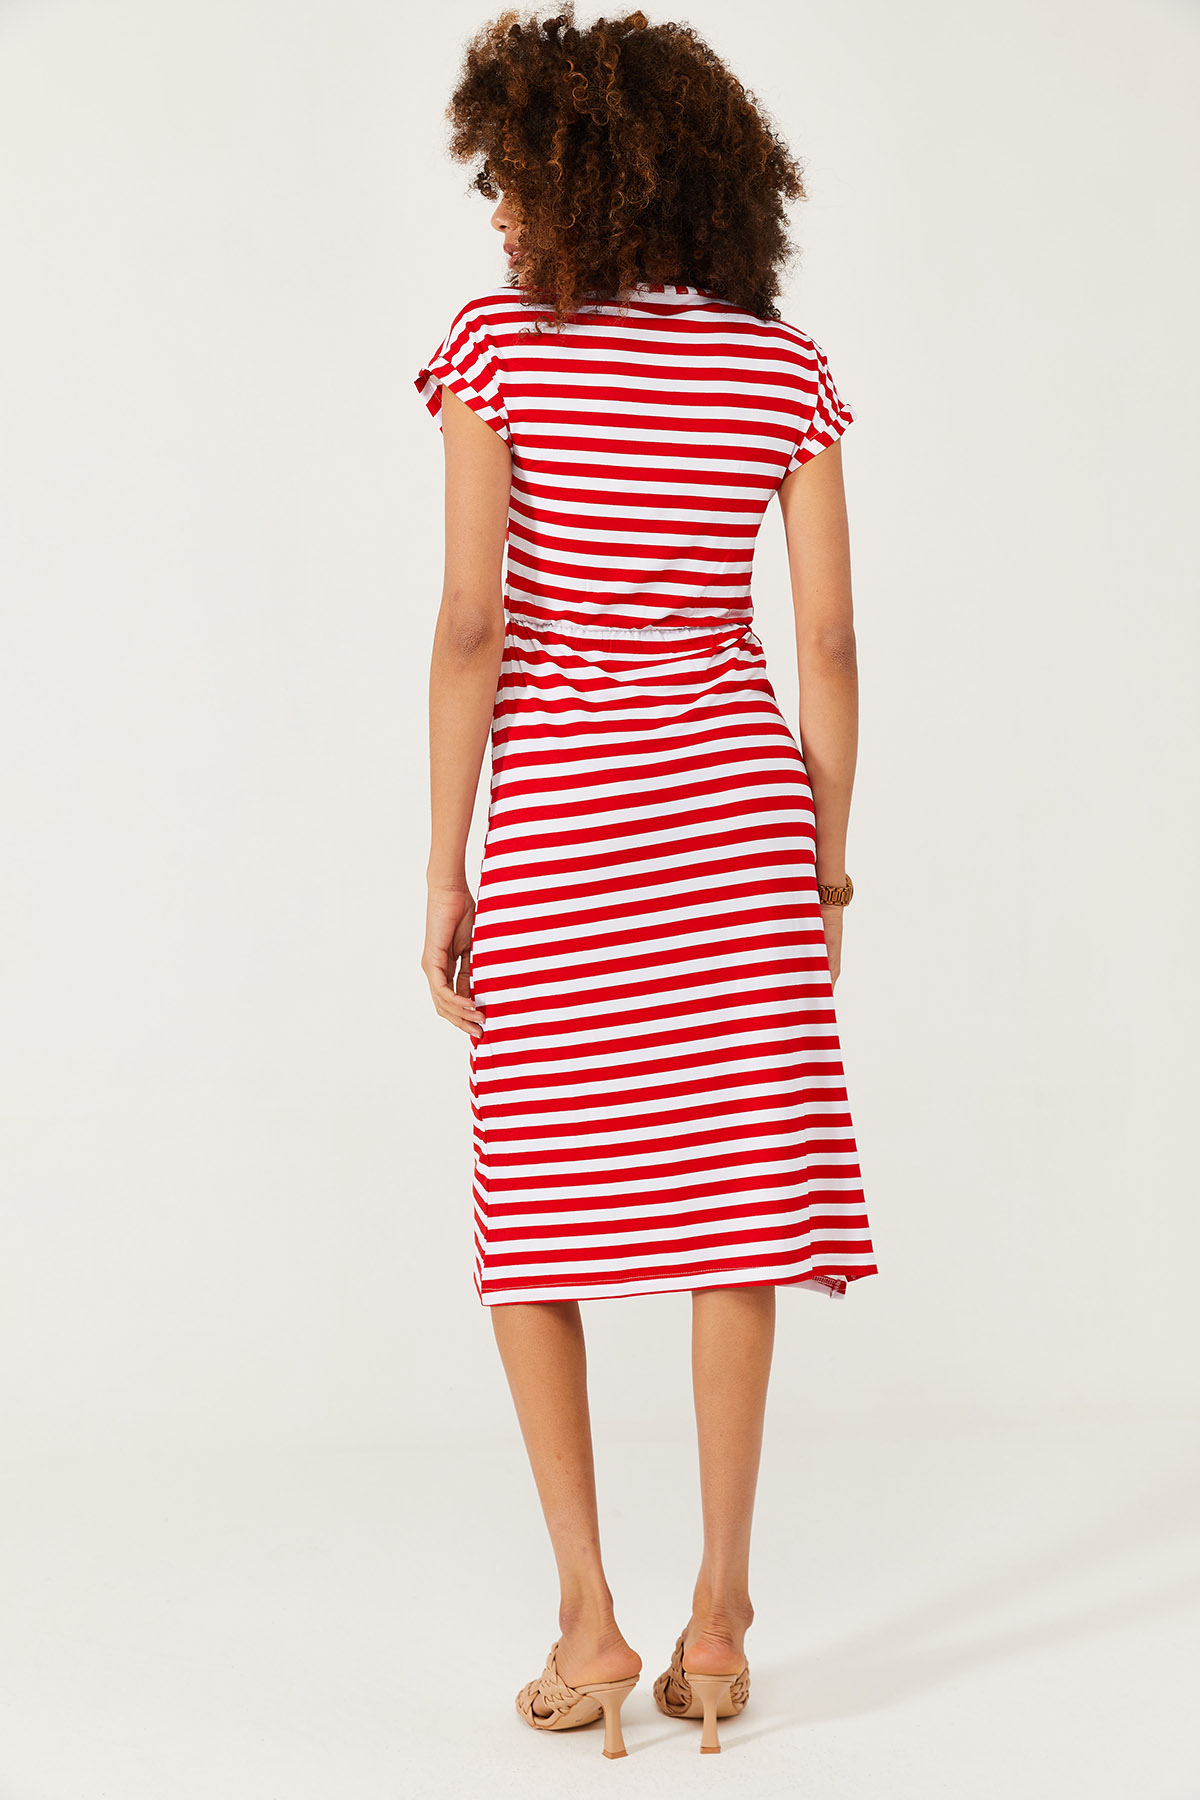 Beyaz & Kırmızı Yumuşak Dokulu Esnek Yırtmaçlı Elbise 1KXK6-44569-80 - 8